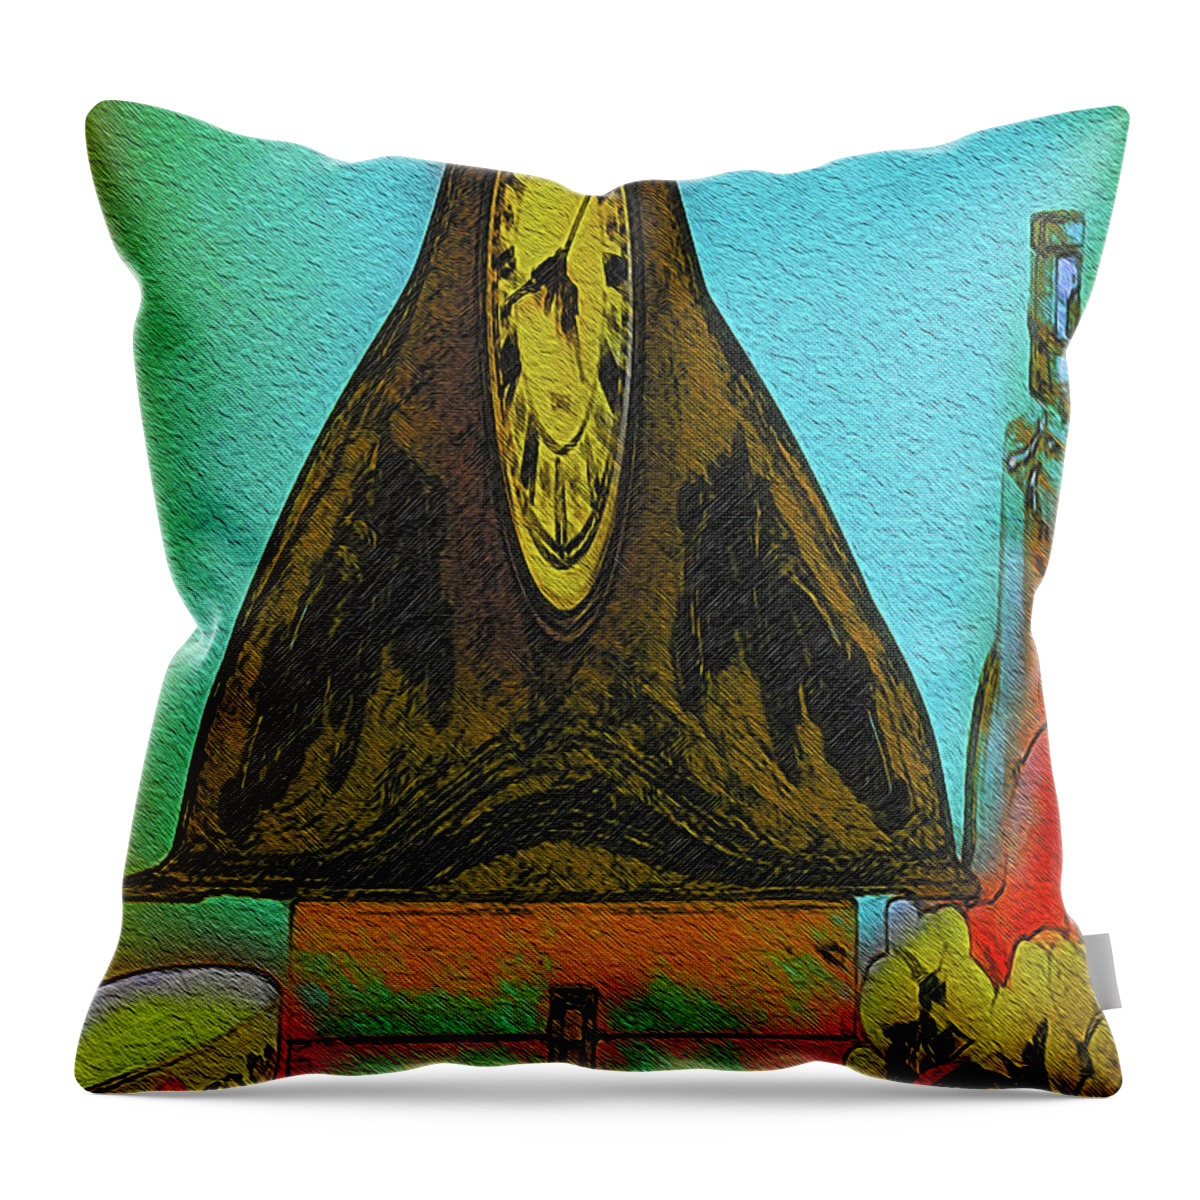 Art Throw Pillow featuring the digital art Abstract Fruit Art  139 by Miss Pet Sitter